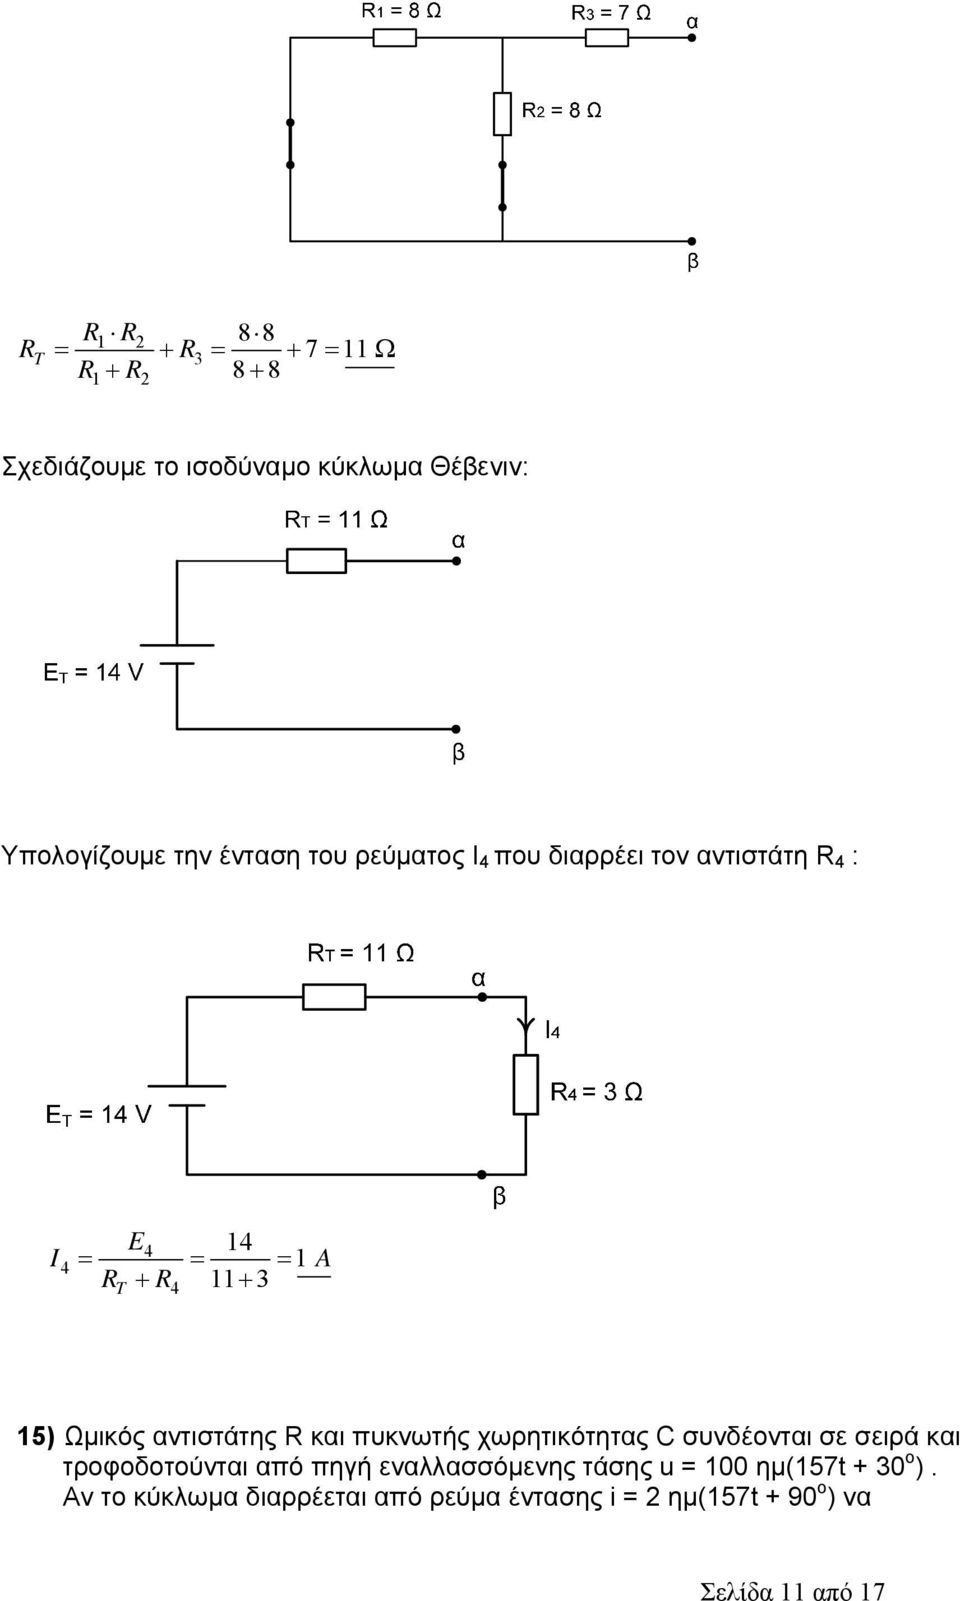 πυκνωτής χωρητικότητας C συνδέονται σε σειρά και τροφοδοτούνται από πηγή εναλλασσόμενης τάσης u =